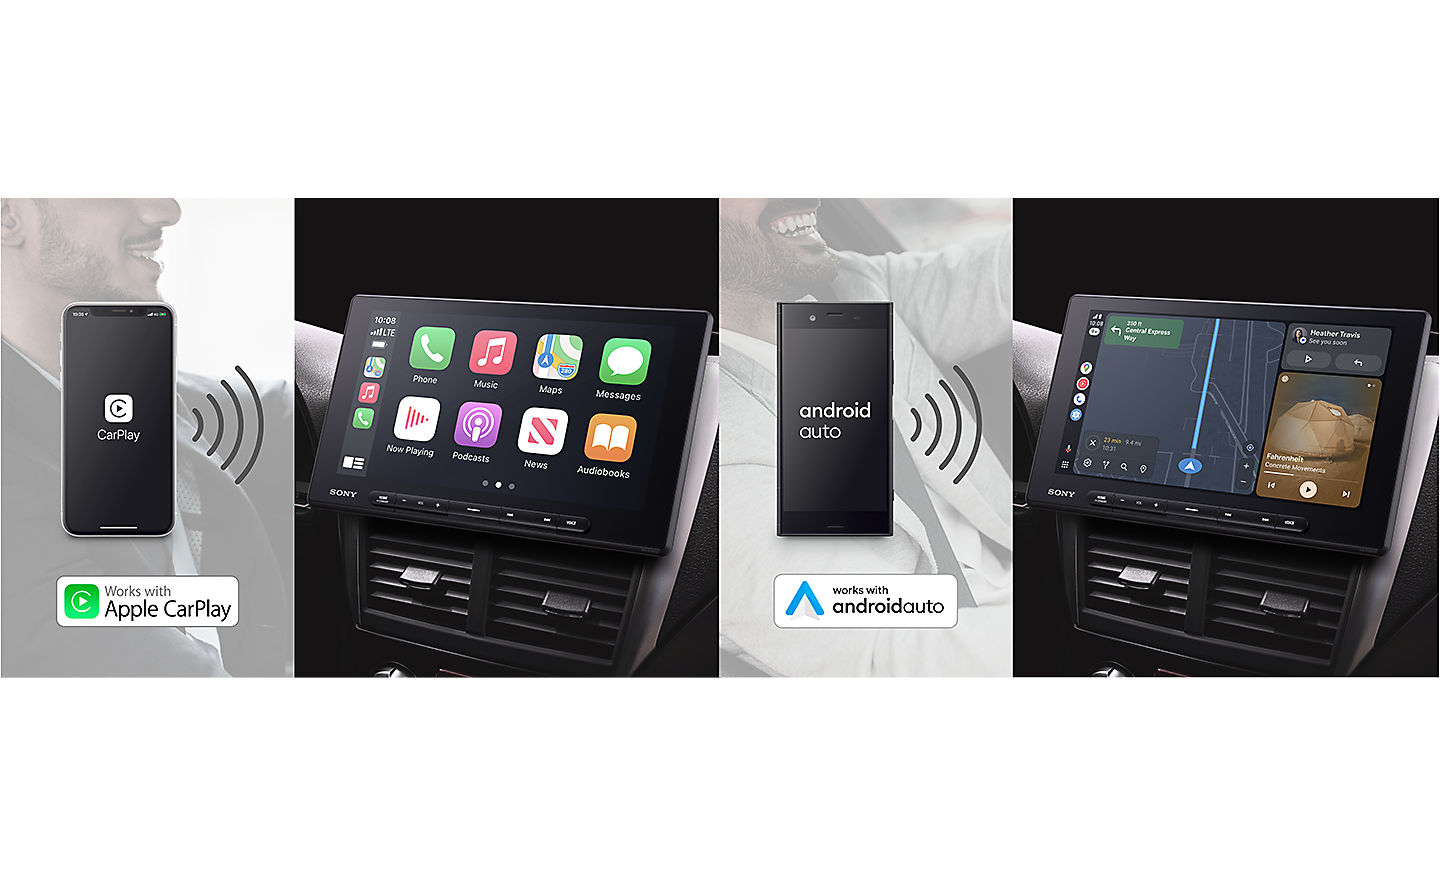 ภาพ XAV-AX8500 ที่เชื่อมต่อผ่าน Wi-Fi กับทั้ง Apple CarPlay และ Android Auto